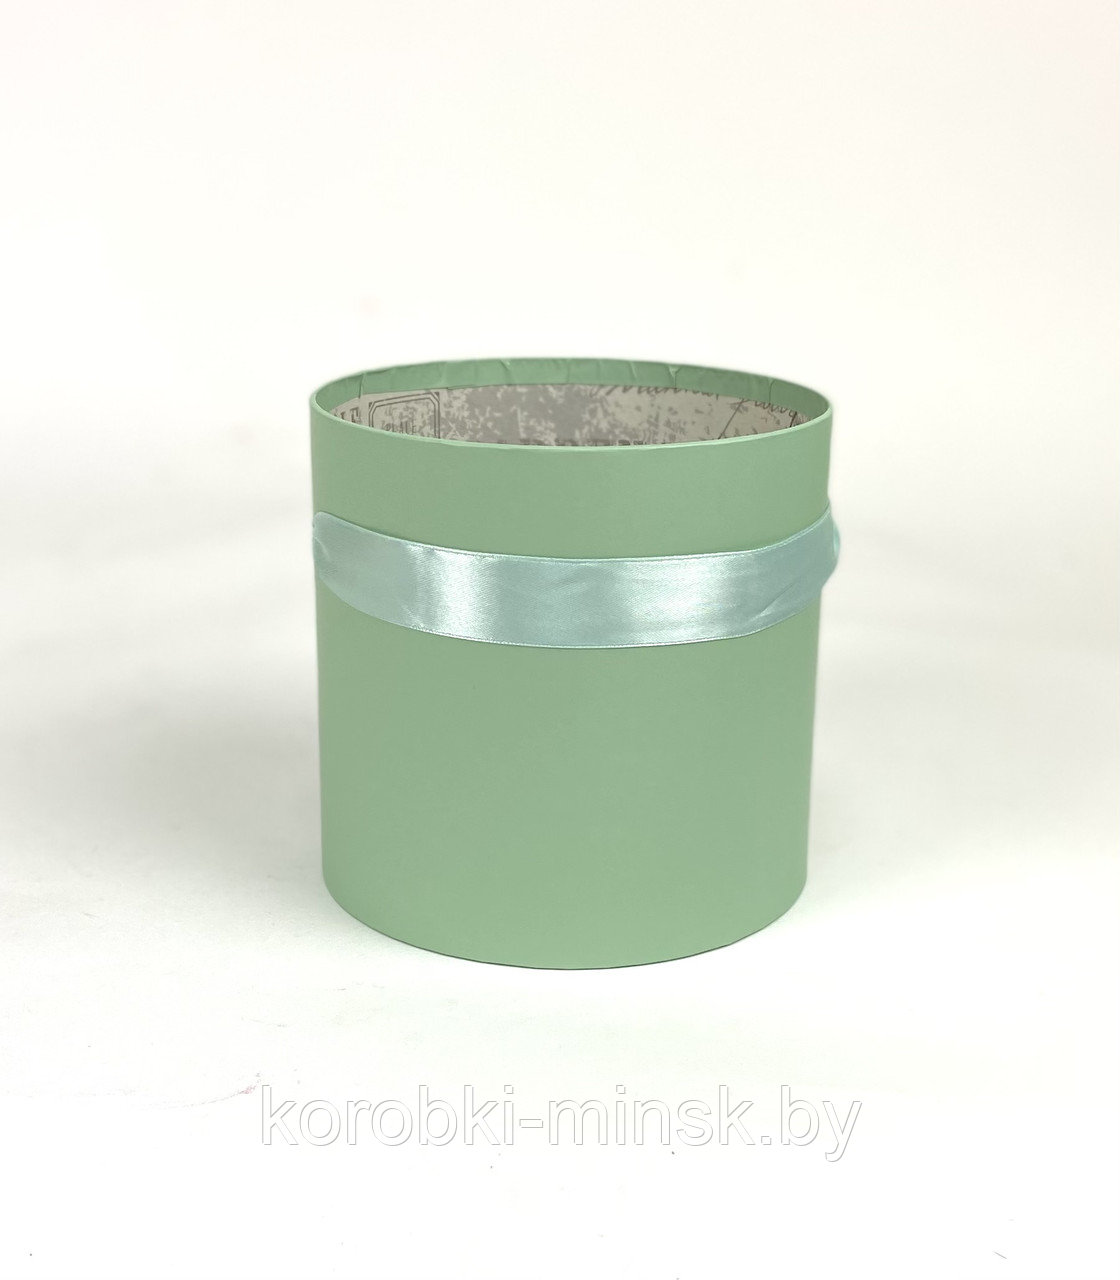 Шляпные коробки эконом D18 см H 18 без крышки, цвет: нежно-зеленый